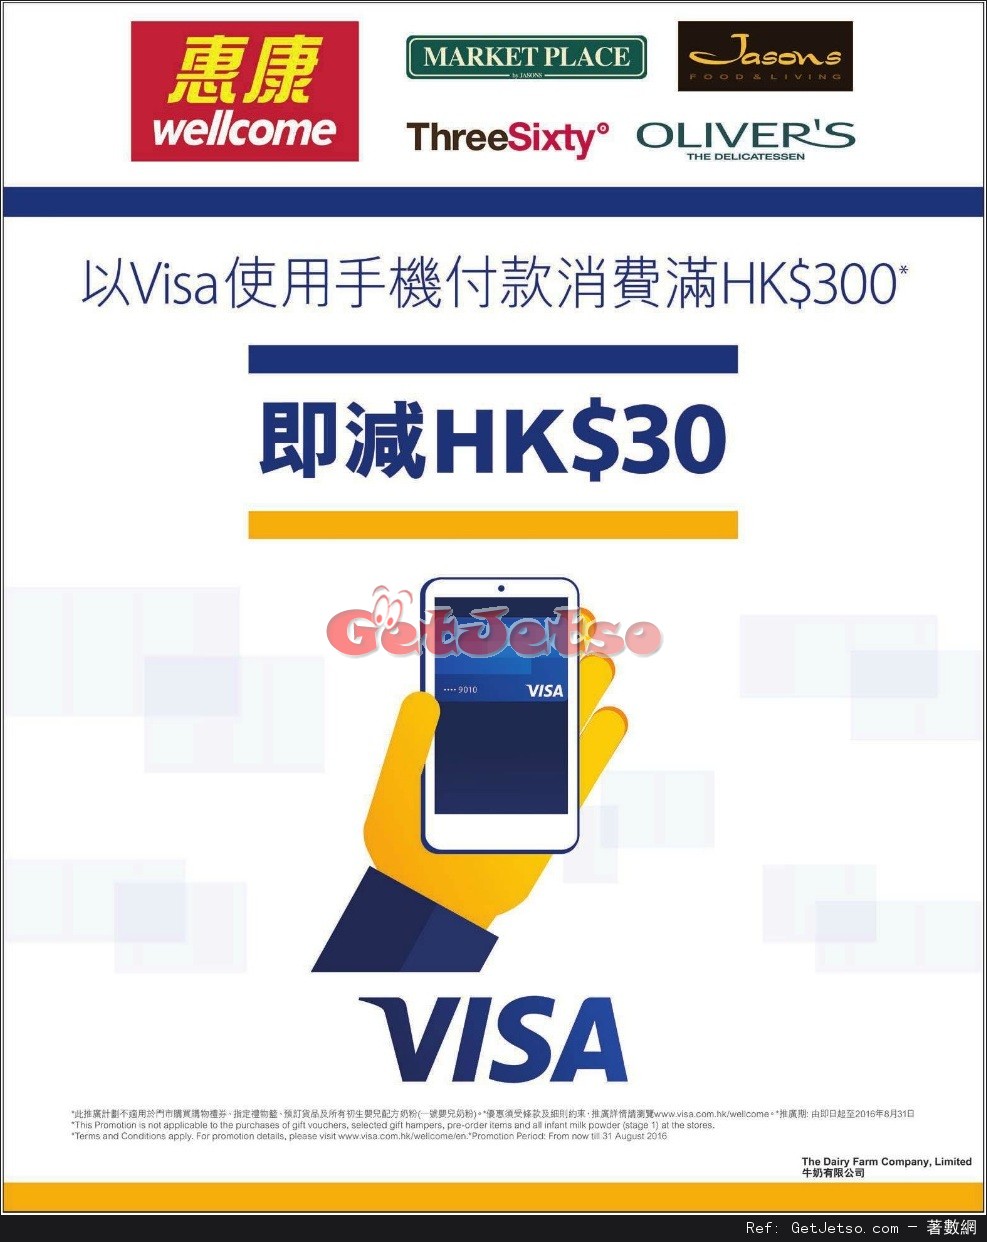 惠康超級市場以Visa使用手機付款滿0即減折扣優惠(至16年8月31日)圖片1